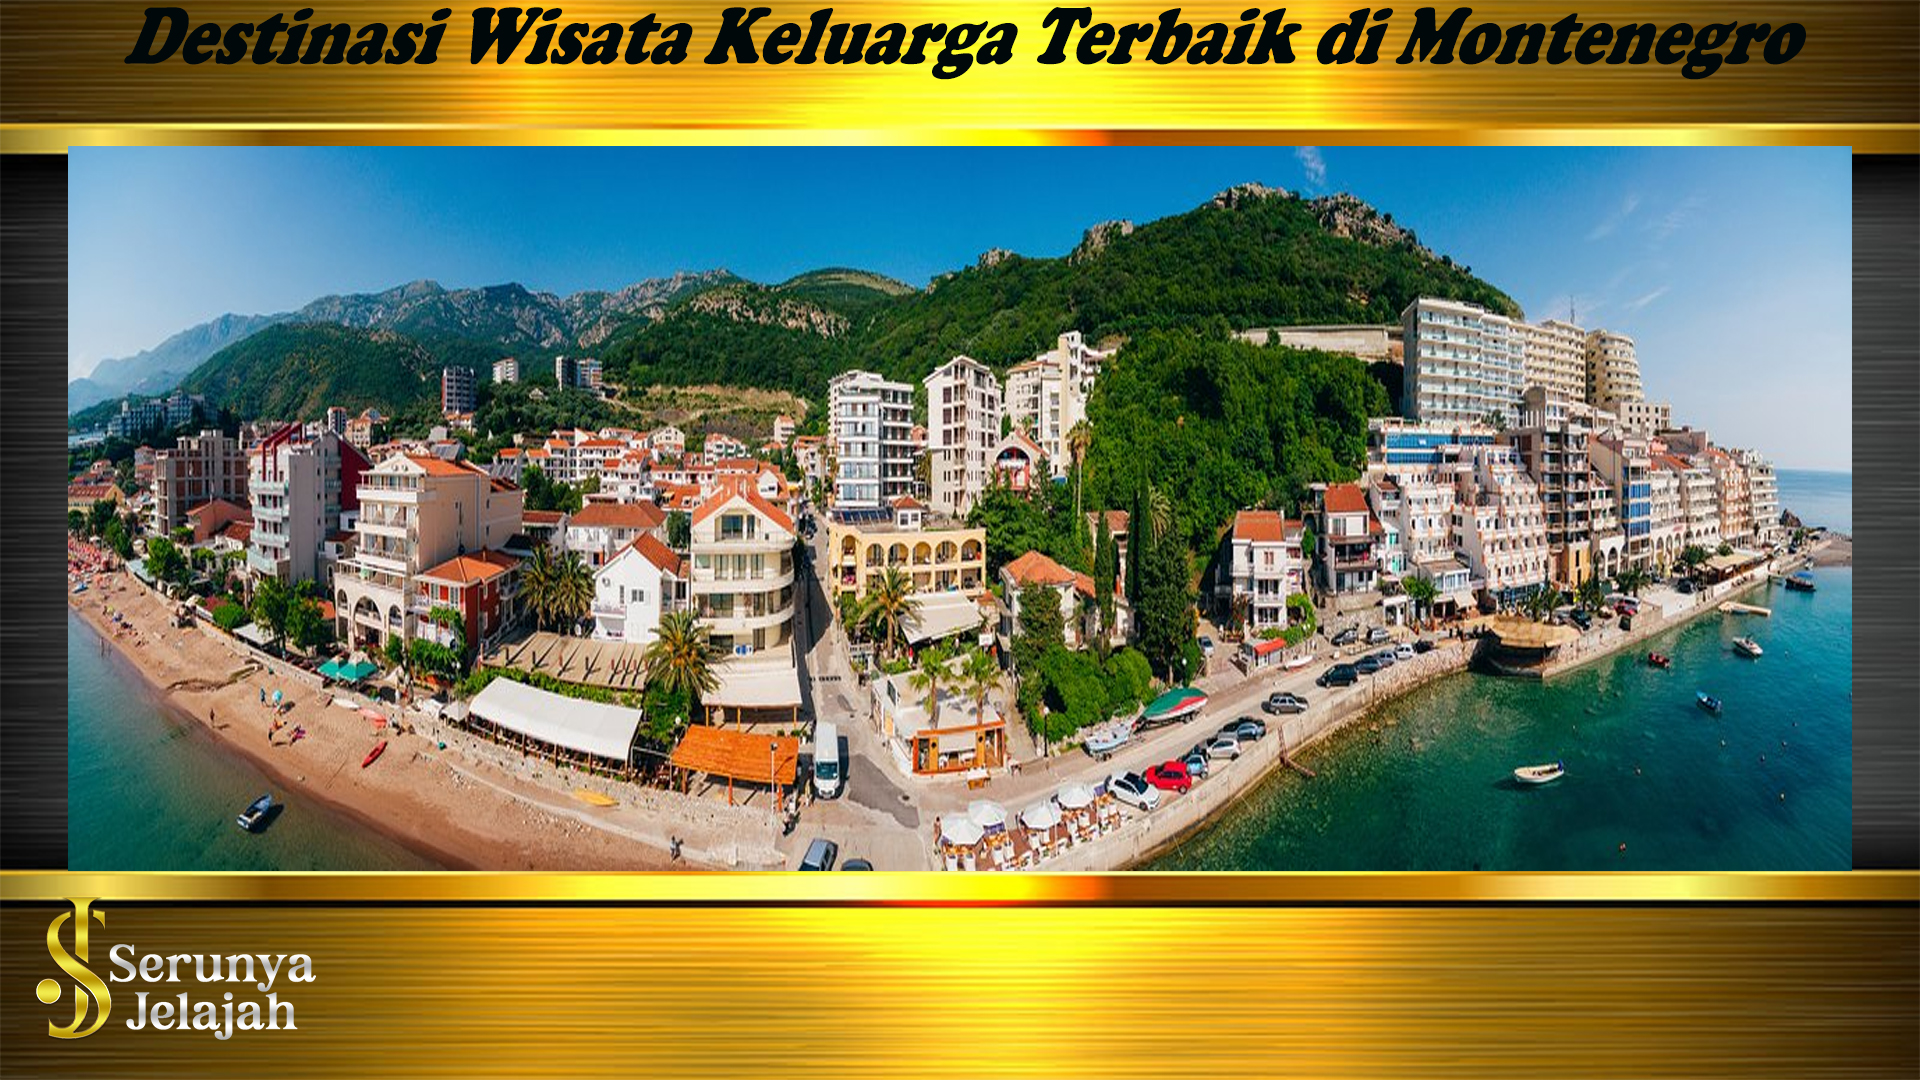 Destinasi Wisata Keluarga Terbaik di Montenegro